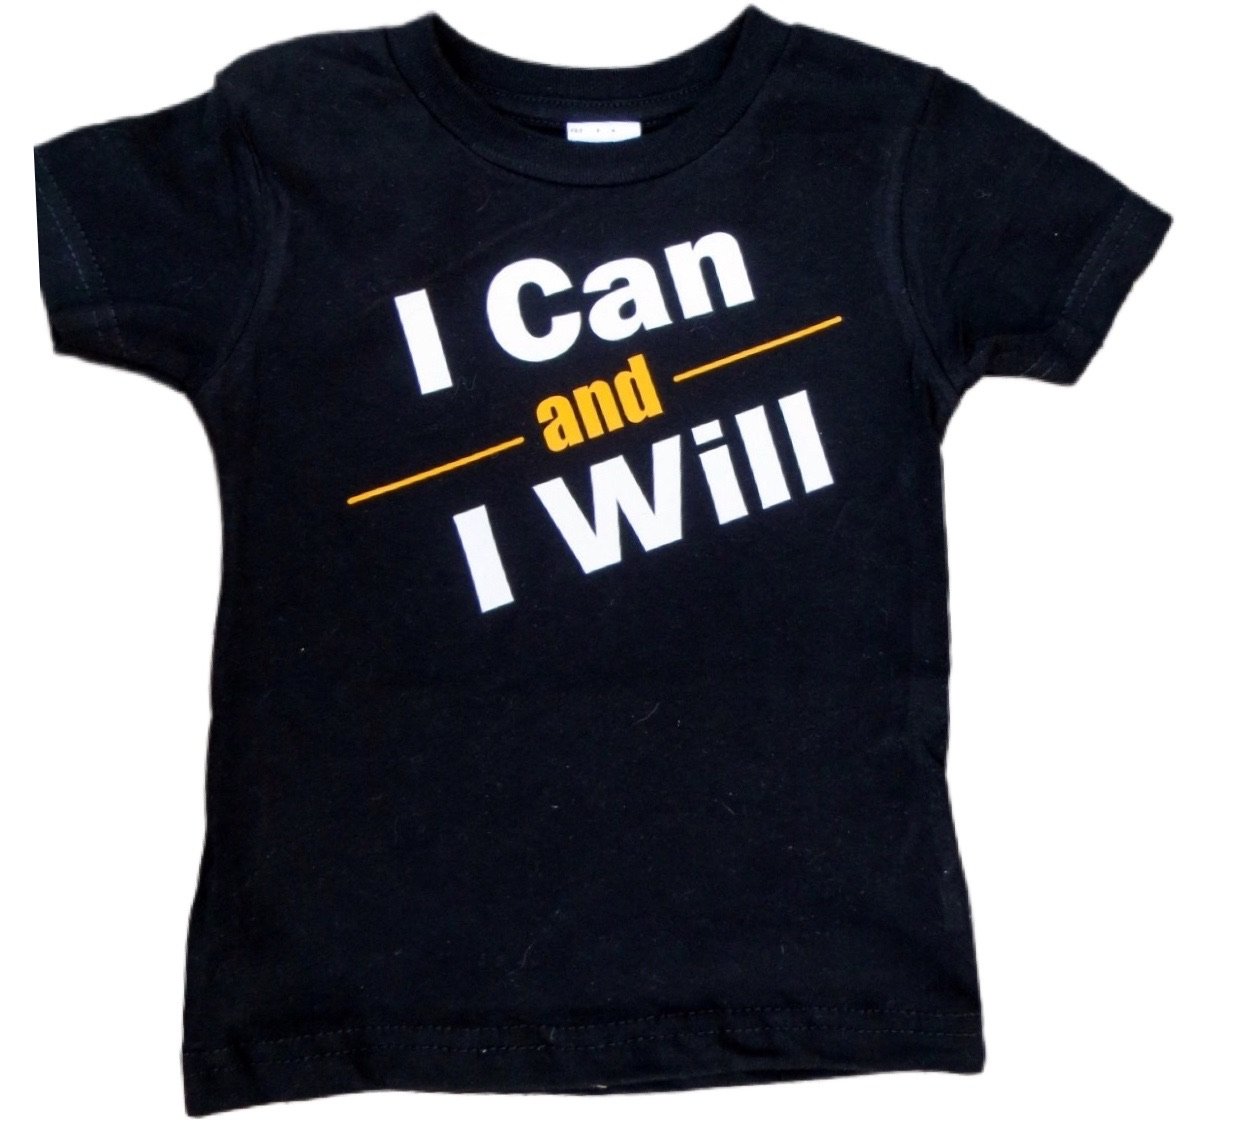 I Can and I Will- Spina Bifida Awareness Shirt